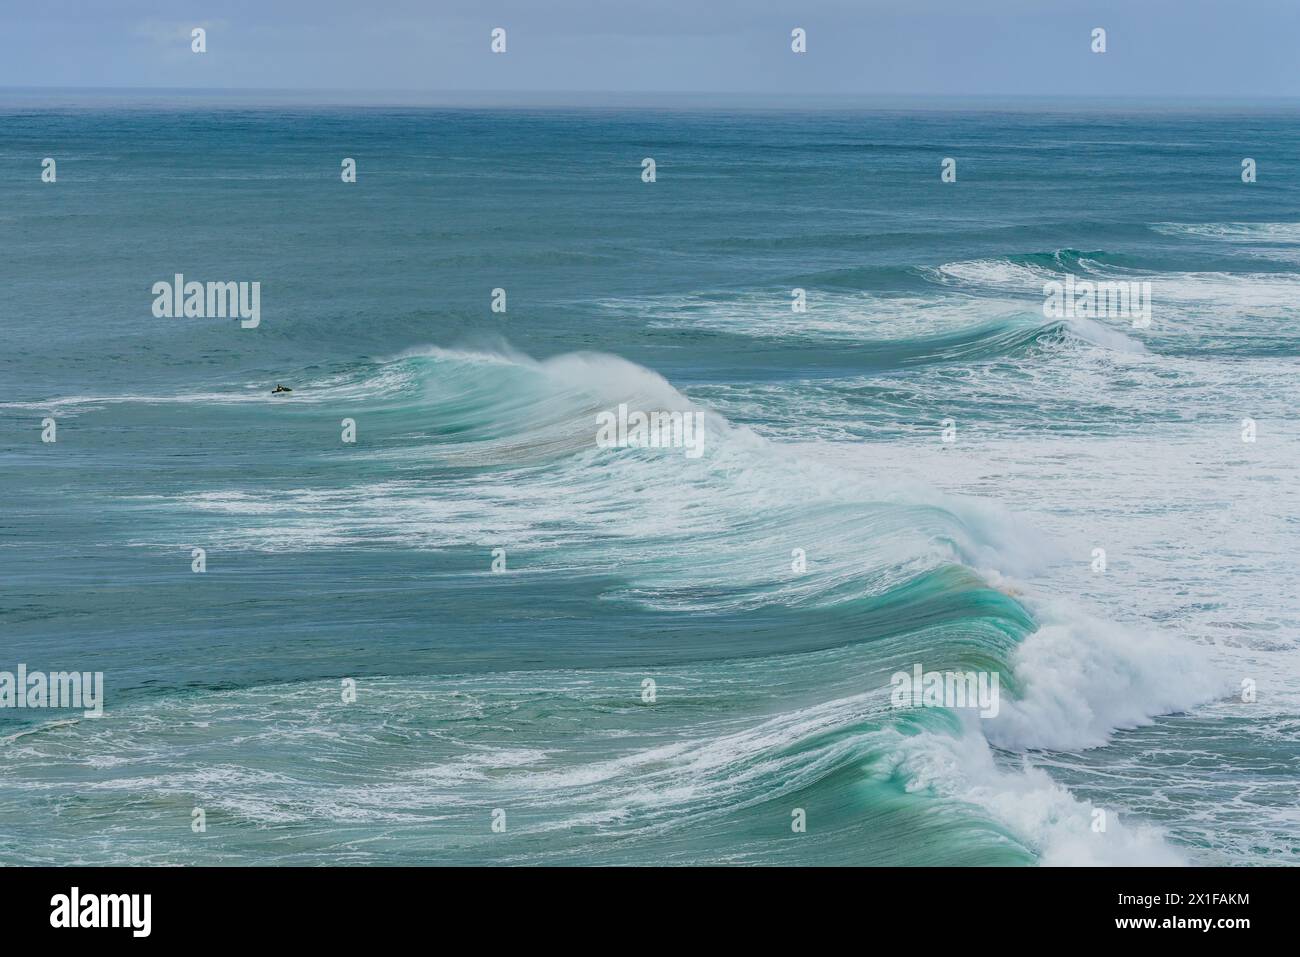 Un surfista solitario cavalca un'onda immensa che mostra il formidabile surf per cui Nazare è famosa. Portogallo, Costa d'argento Foto Stock